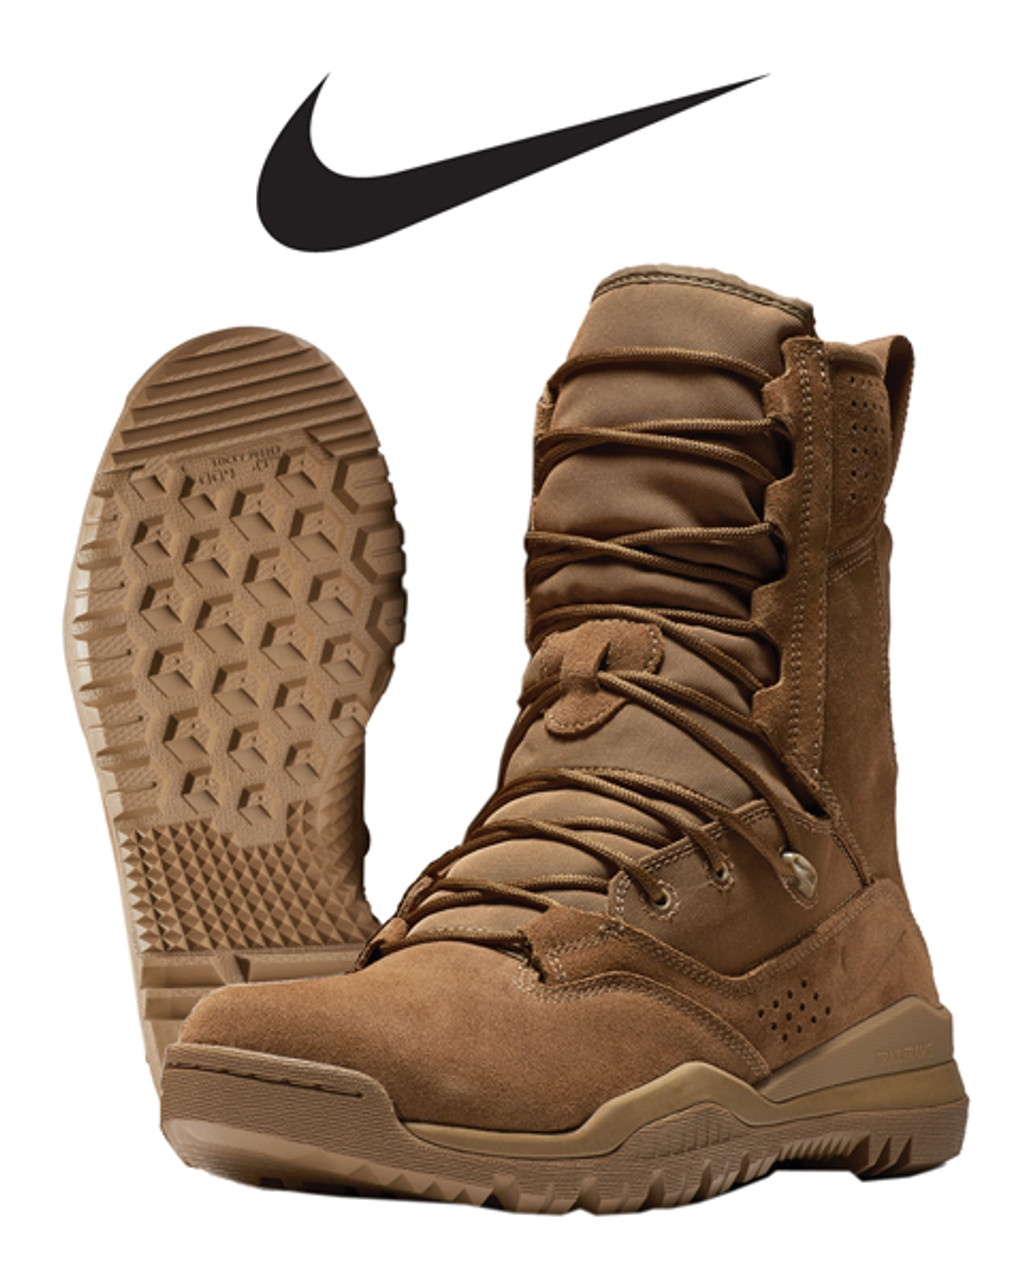 Nike SFB Field 2 Boots